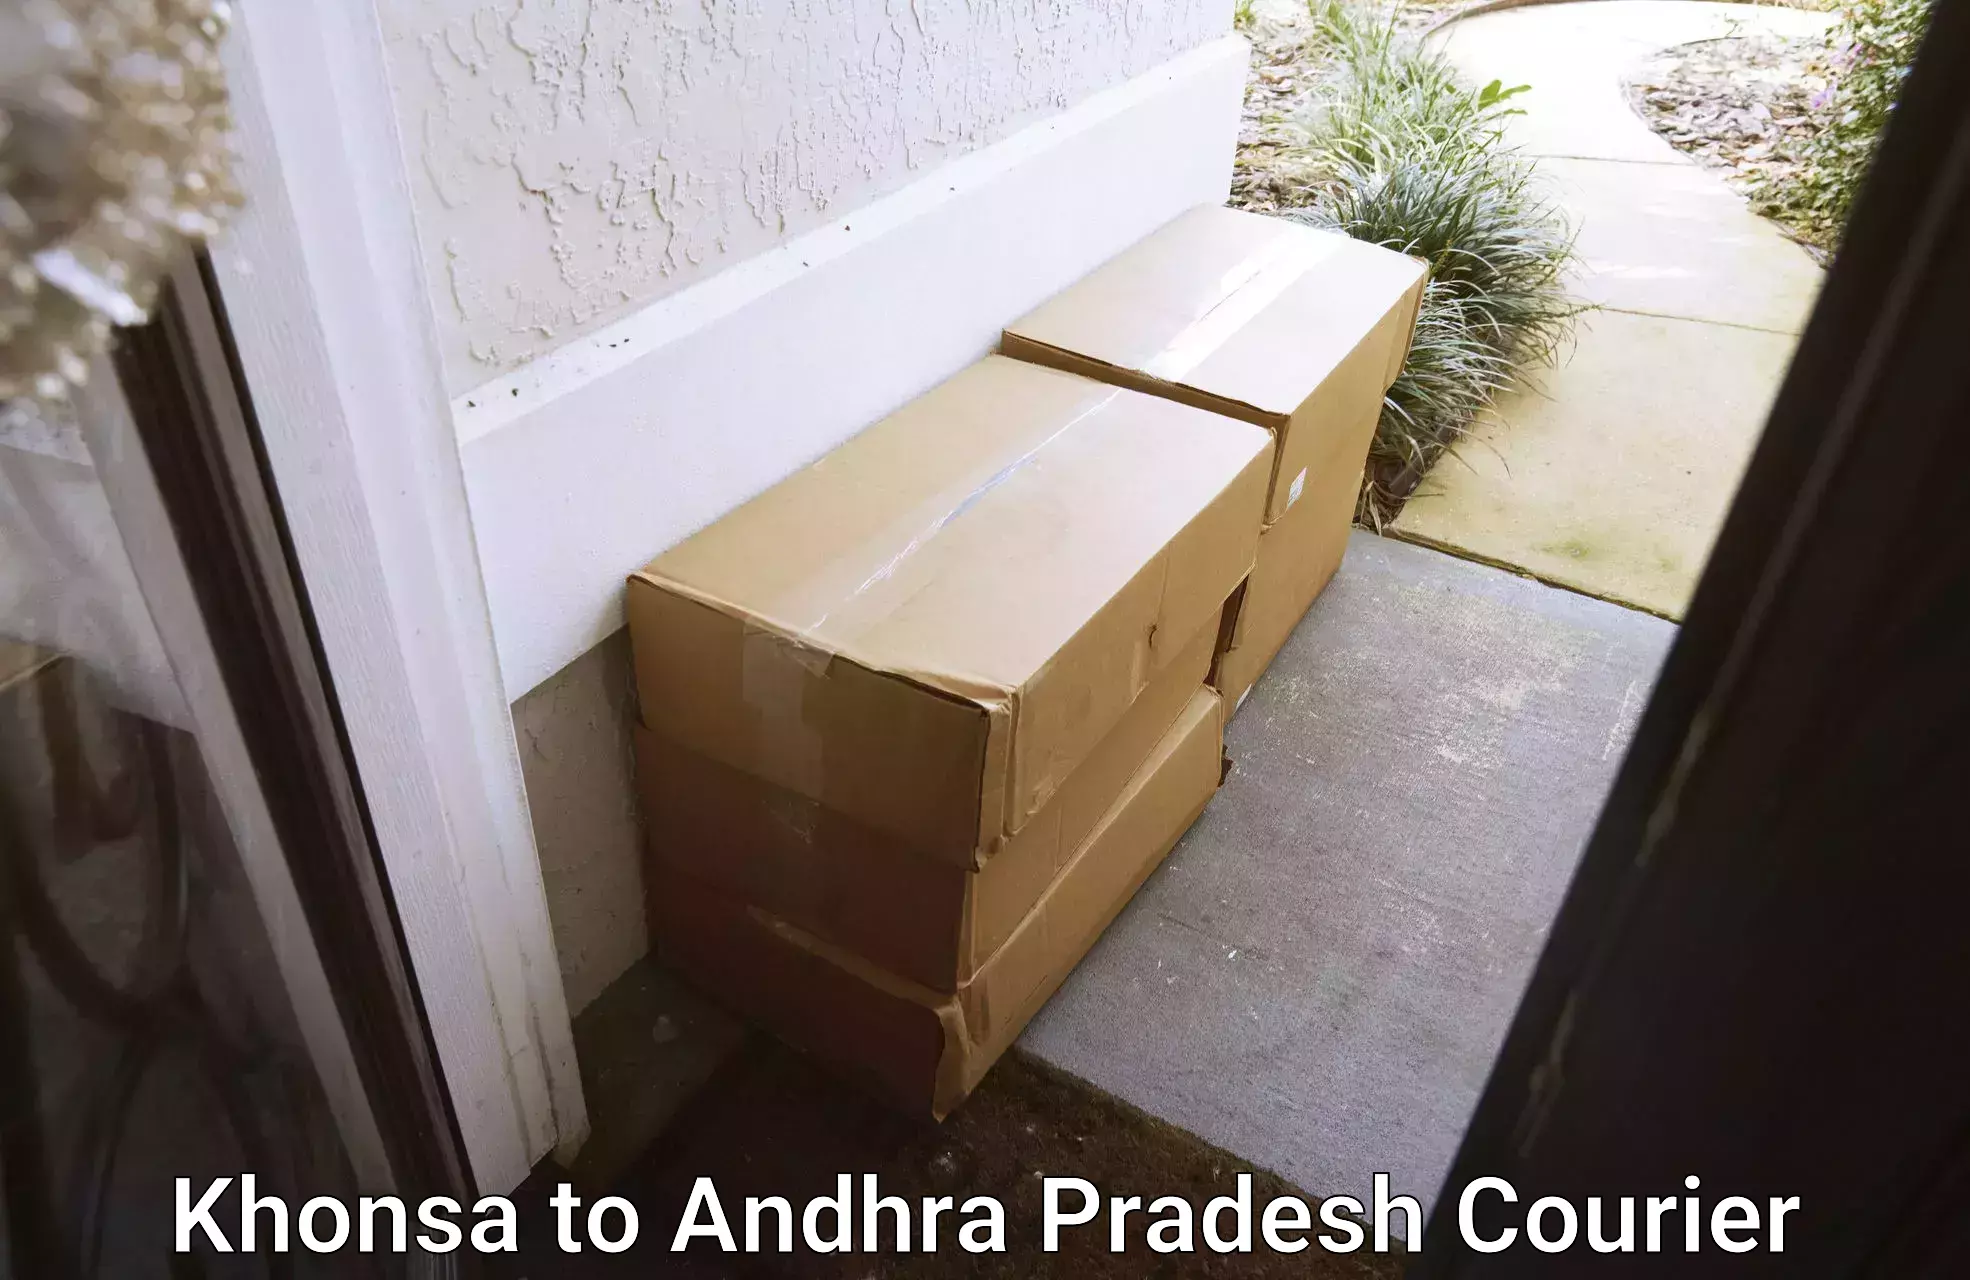 24/7 courier service Khonsa to Andhra Pradesh